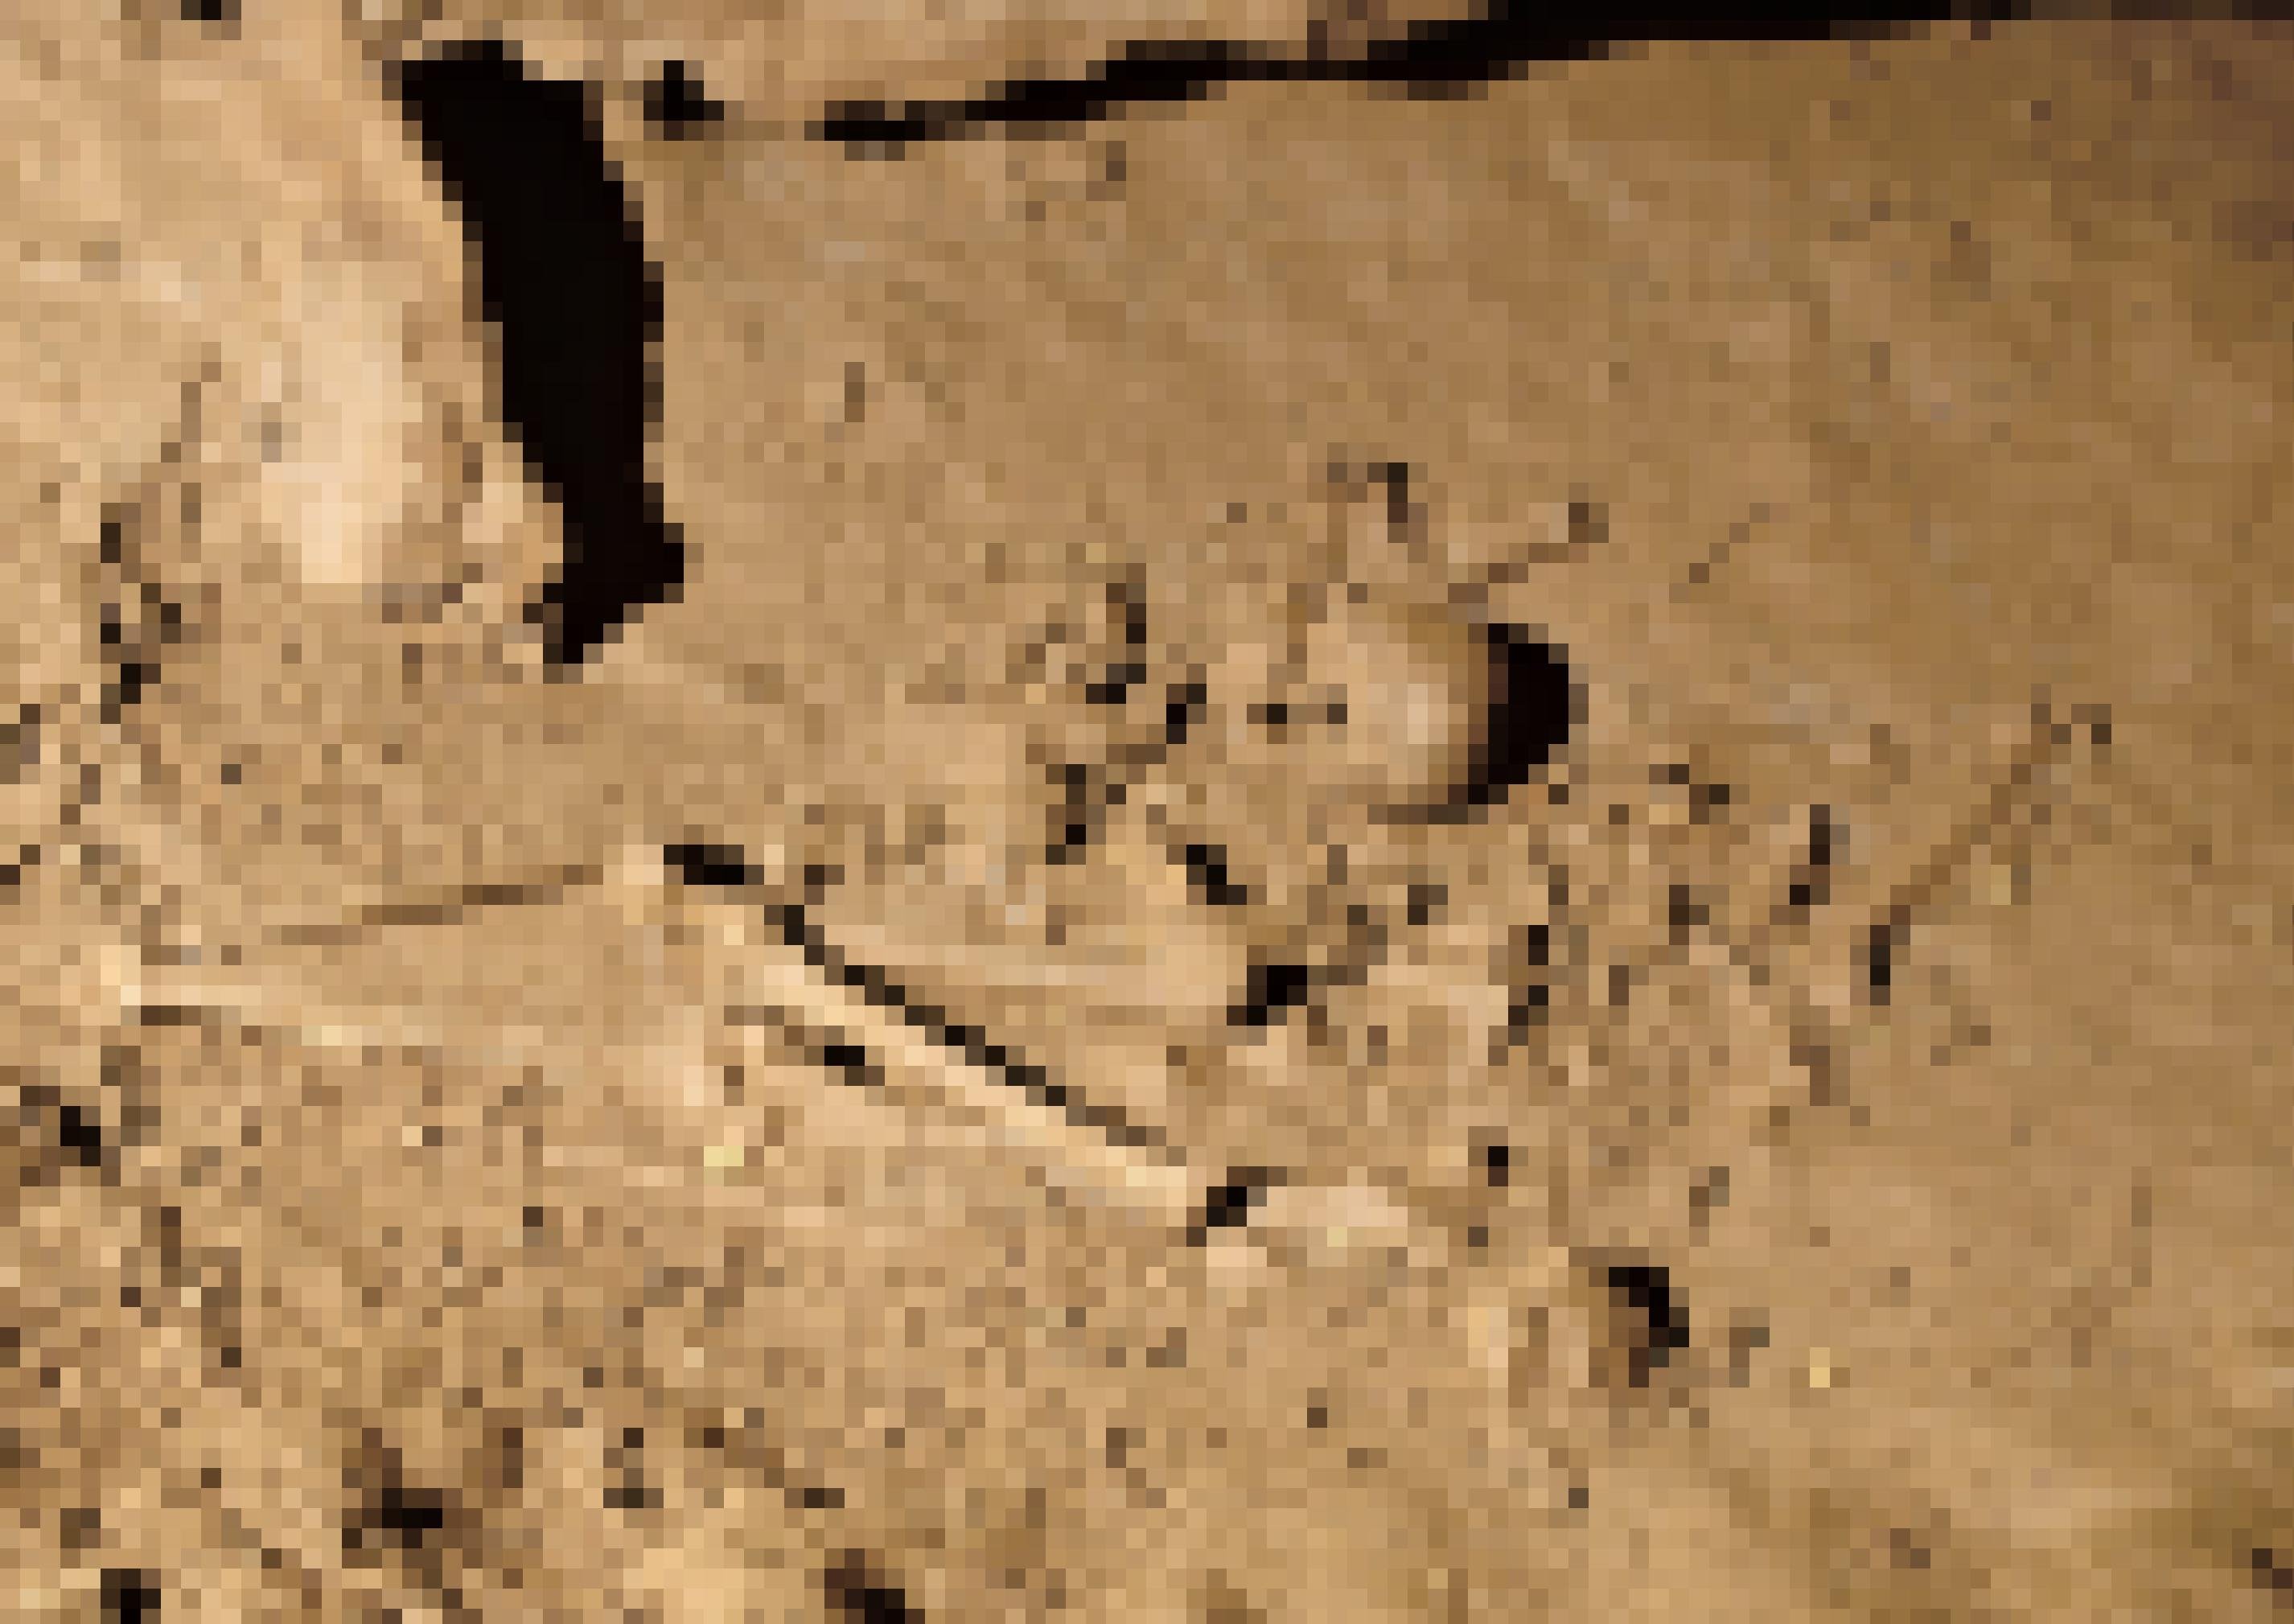 Das Bild zeigt das nahezu komplett erhaltene, 30.000 Jahre alte Skelett eines jungen Mannes, das in einer Mulde am Boden der Grotte de Cussac, einer Höhle im Südwesten Frankreichs gefunden wurde. Gut erkennen lassen sich die langen Beinknochen und der Schädel, auch Teile des Beckens und der Armknochen. Das Skelett ruht in der ehemaligen Schlafkuhle eines Höhlenbären. Es wirkt, als sei der Tote dort von seinen Angehörigen zusammengekauert abgelegt und bestattet worden.